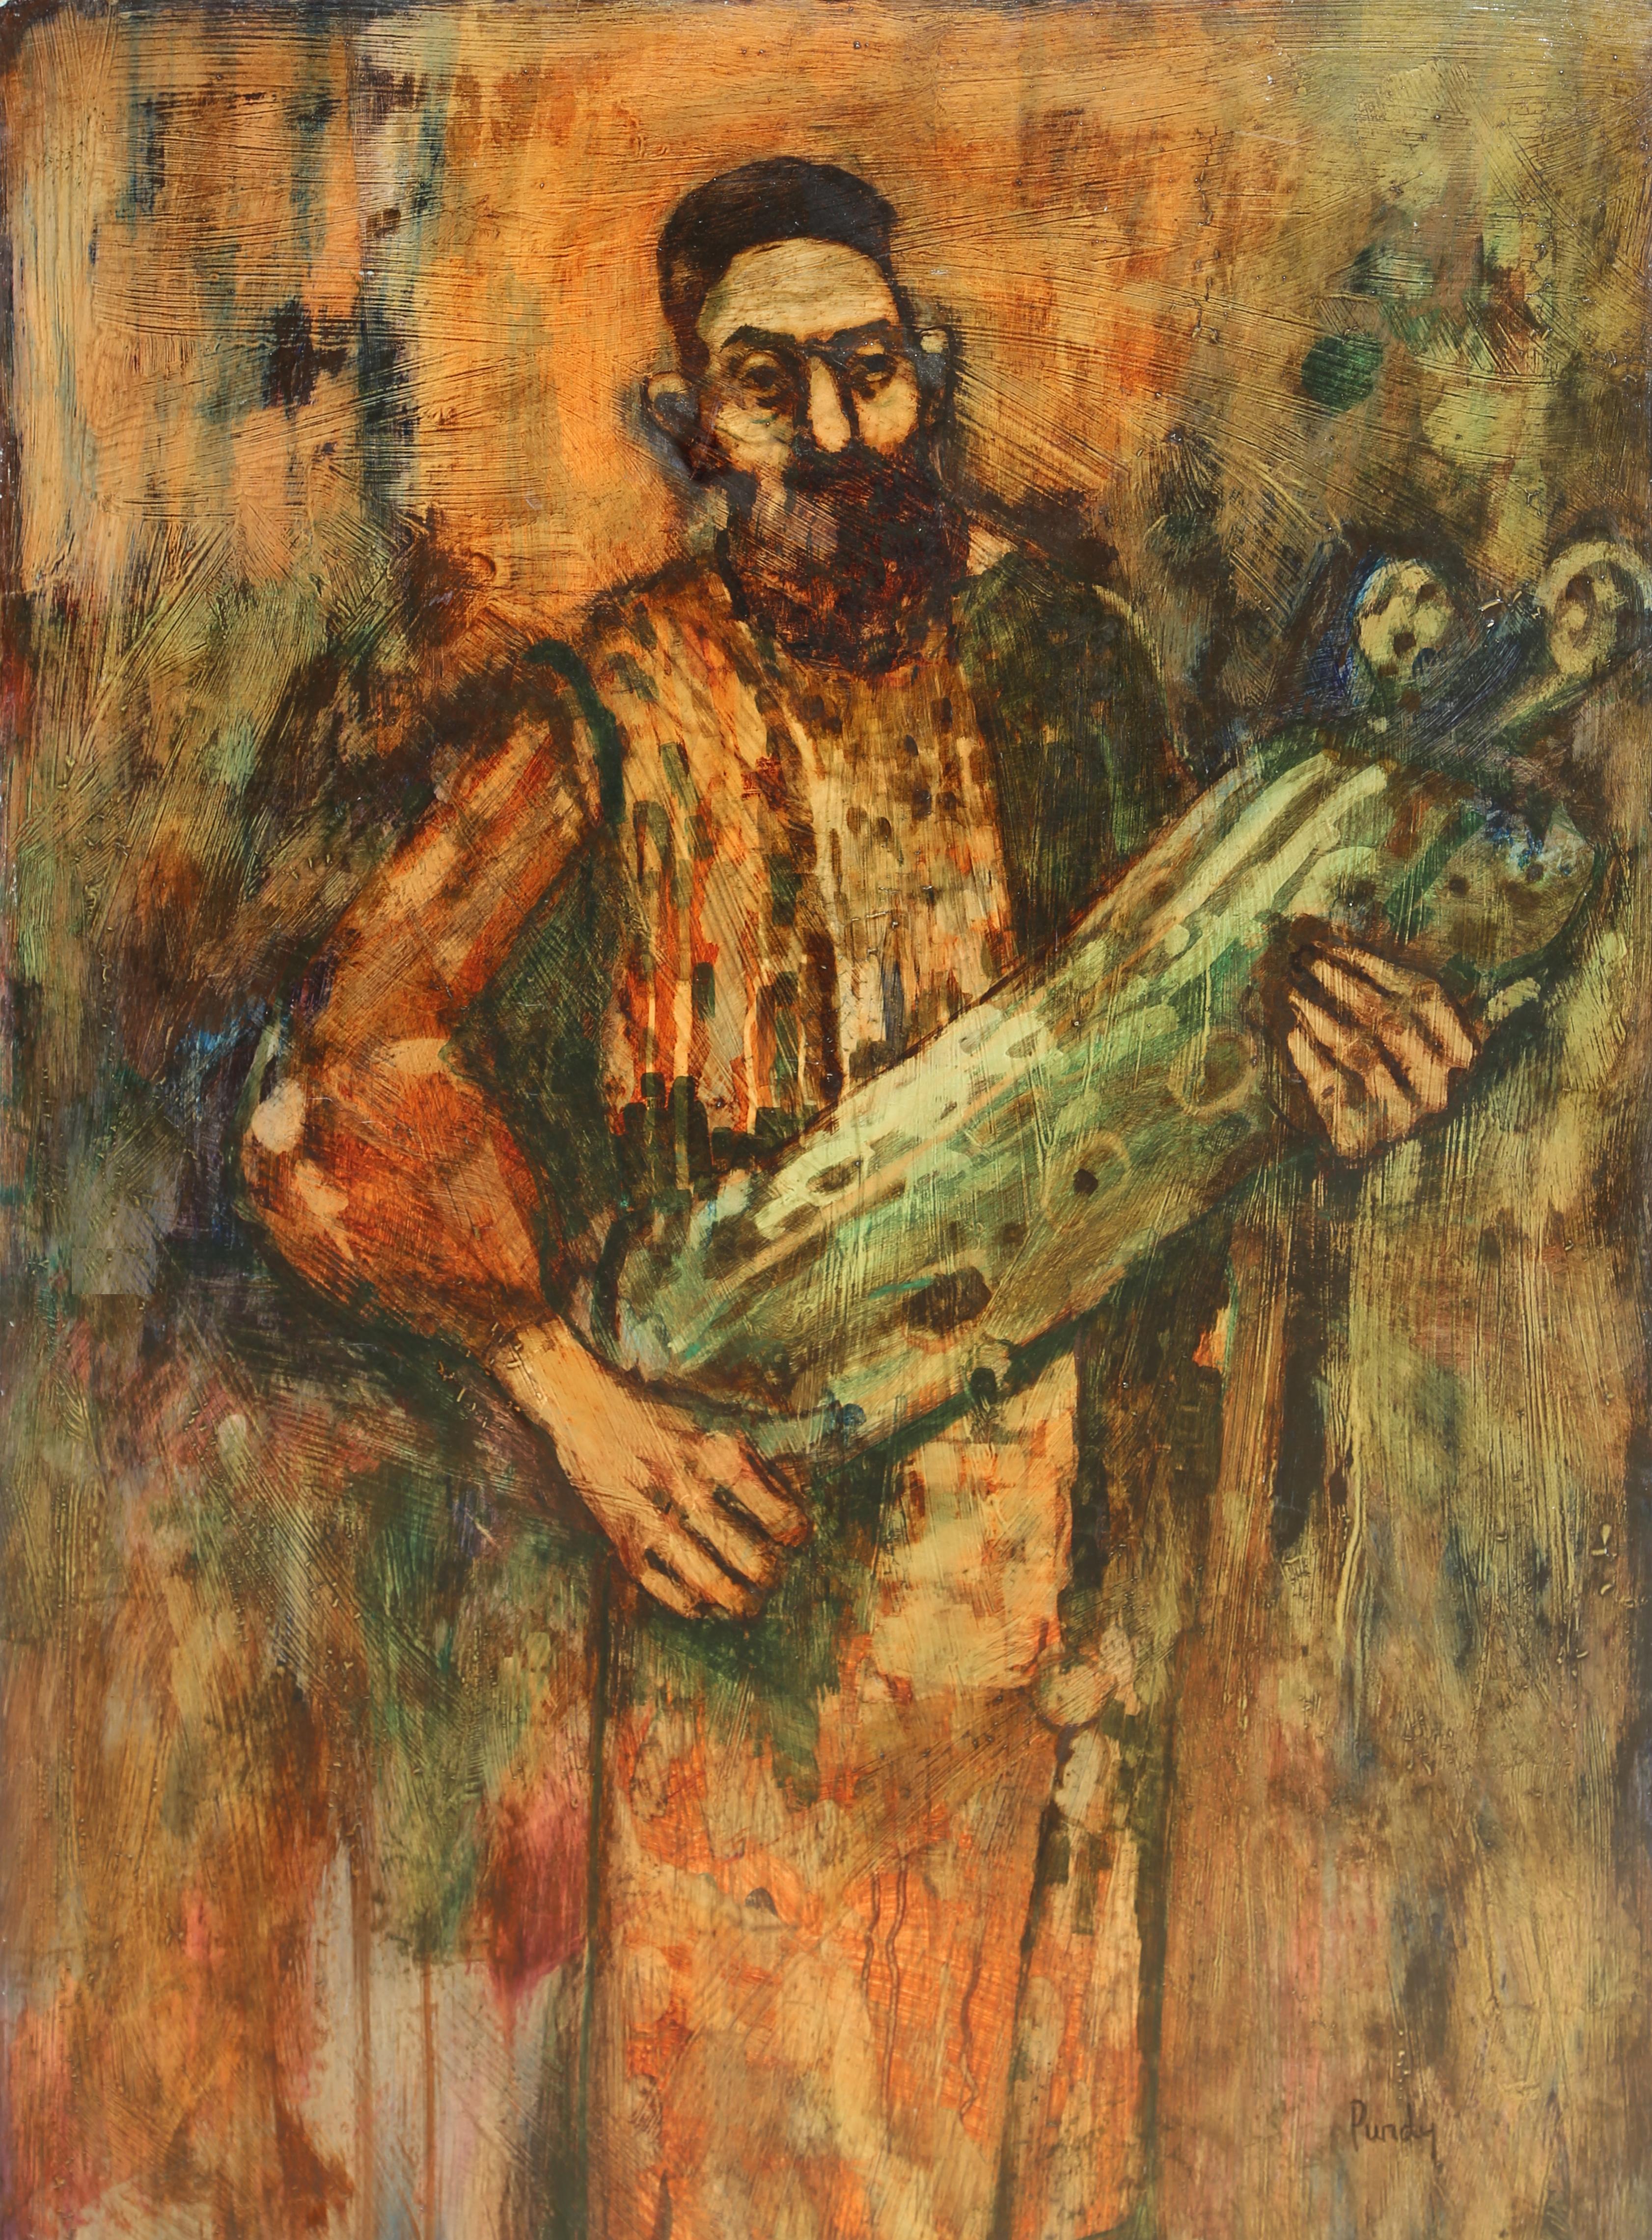 Artiste : Donald Roy Purdy, américain (1924 - )
Titre : Rabbin tenant la Torah
Médium : Huile sur Masonite, signé à gauche.
Taille : 91,44 x 60,96 cm (36 x 24 in.)